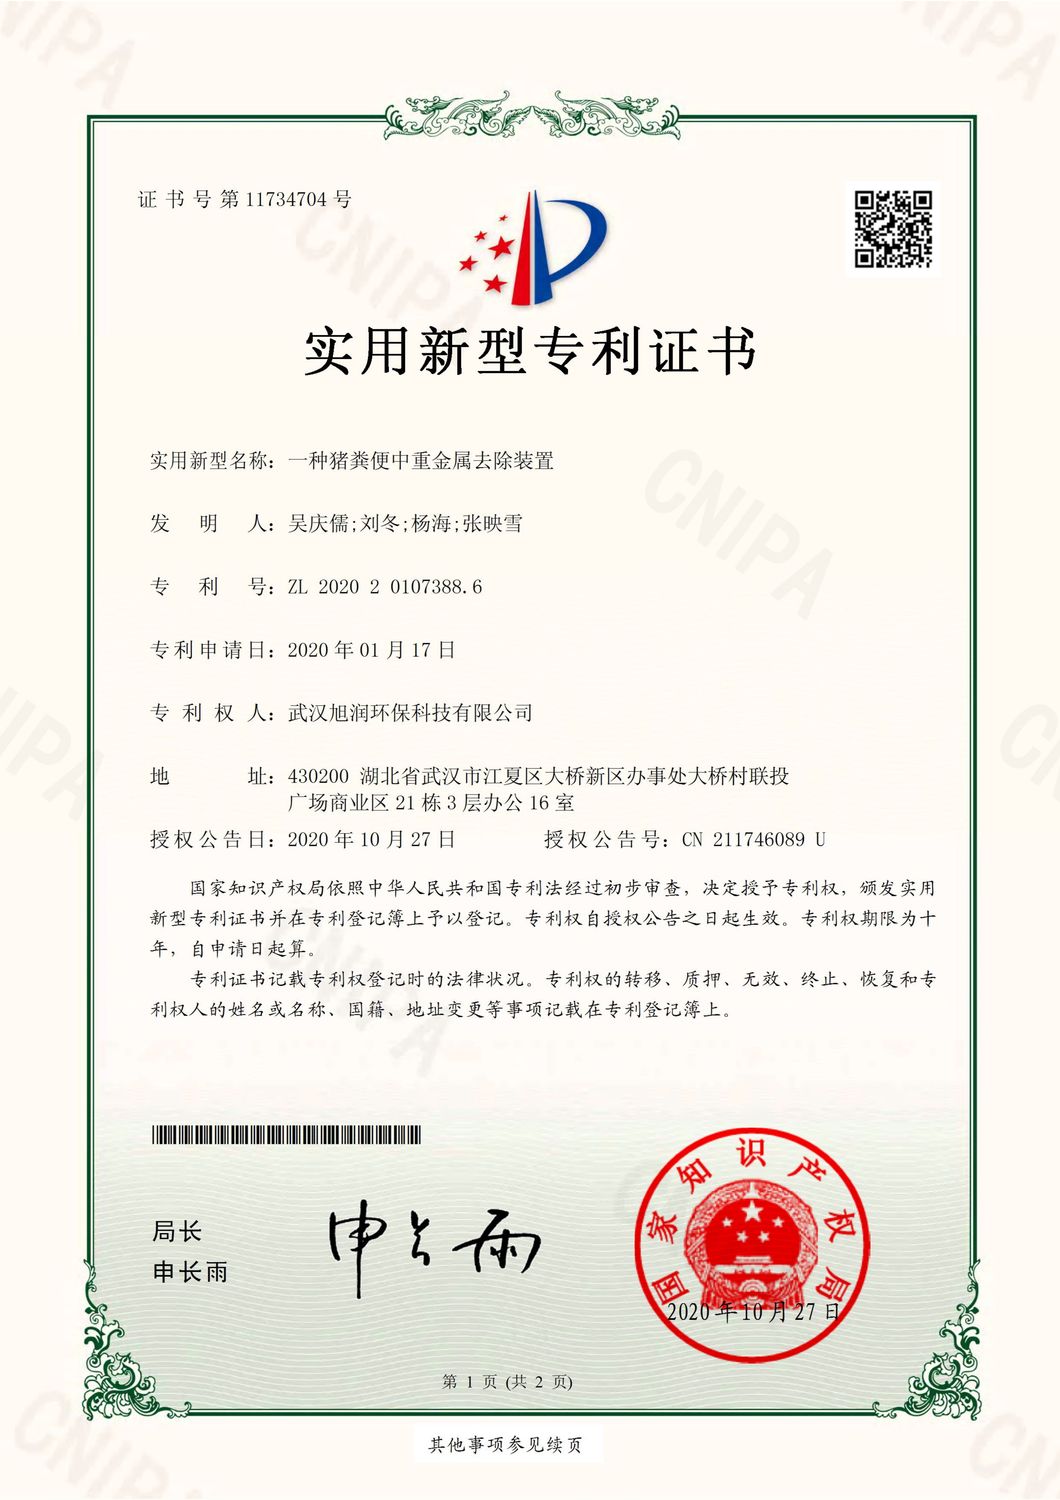 HF20B0149-武汉旭润环保-电子签章证书_1.jpg